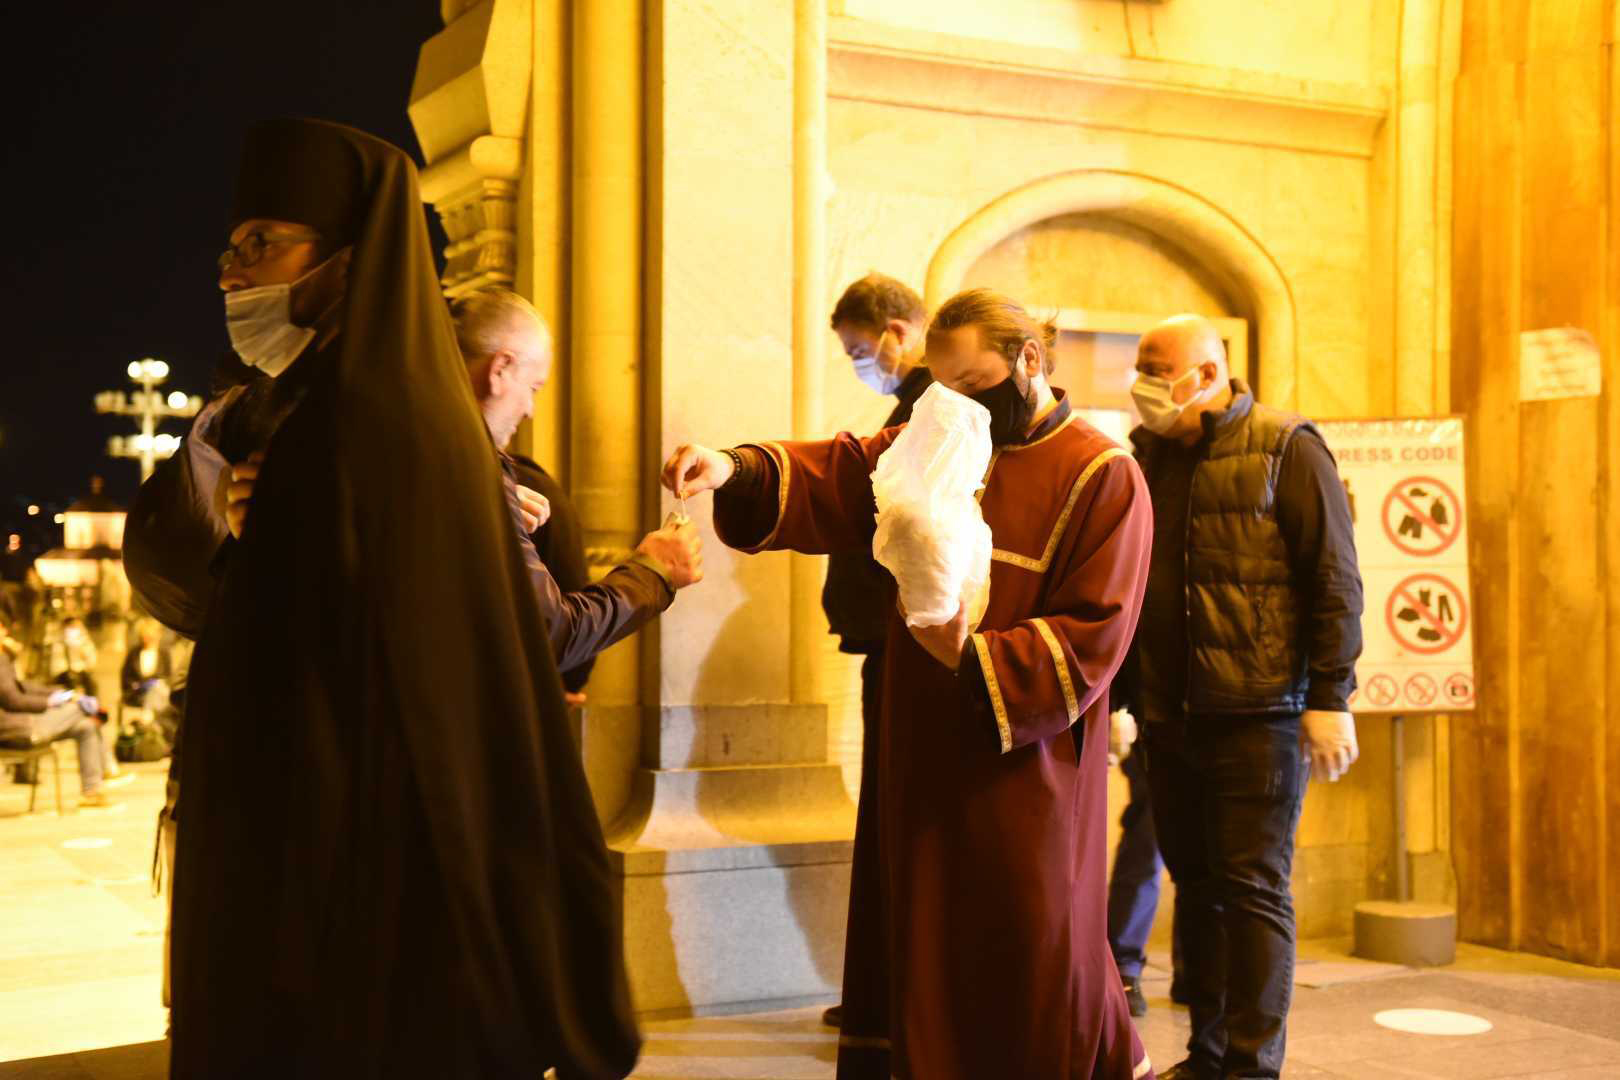 Служители церкви раздают маски на входе в церковь. Фото: Мариам Никурадзе/OC Media.